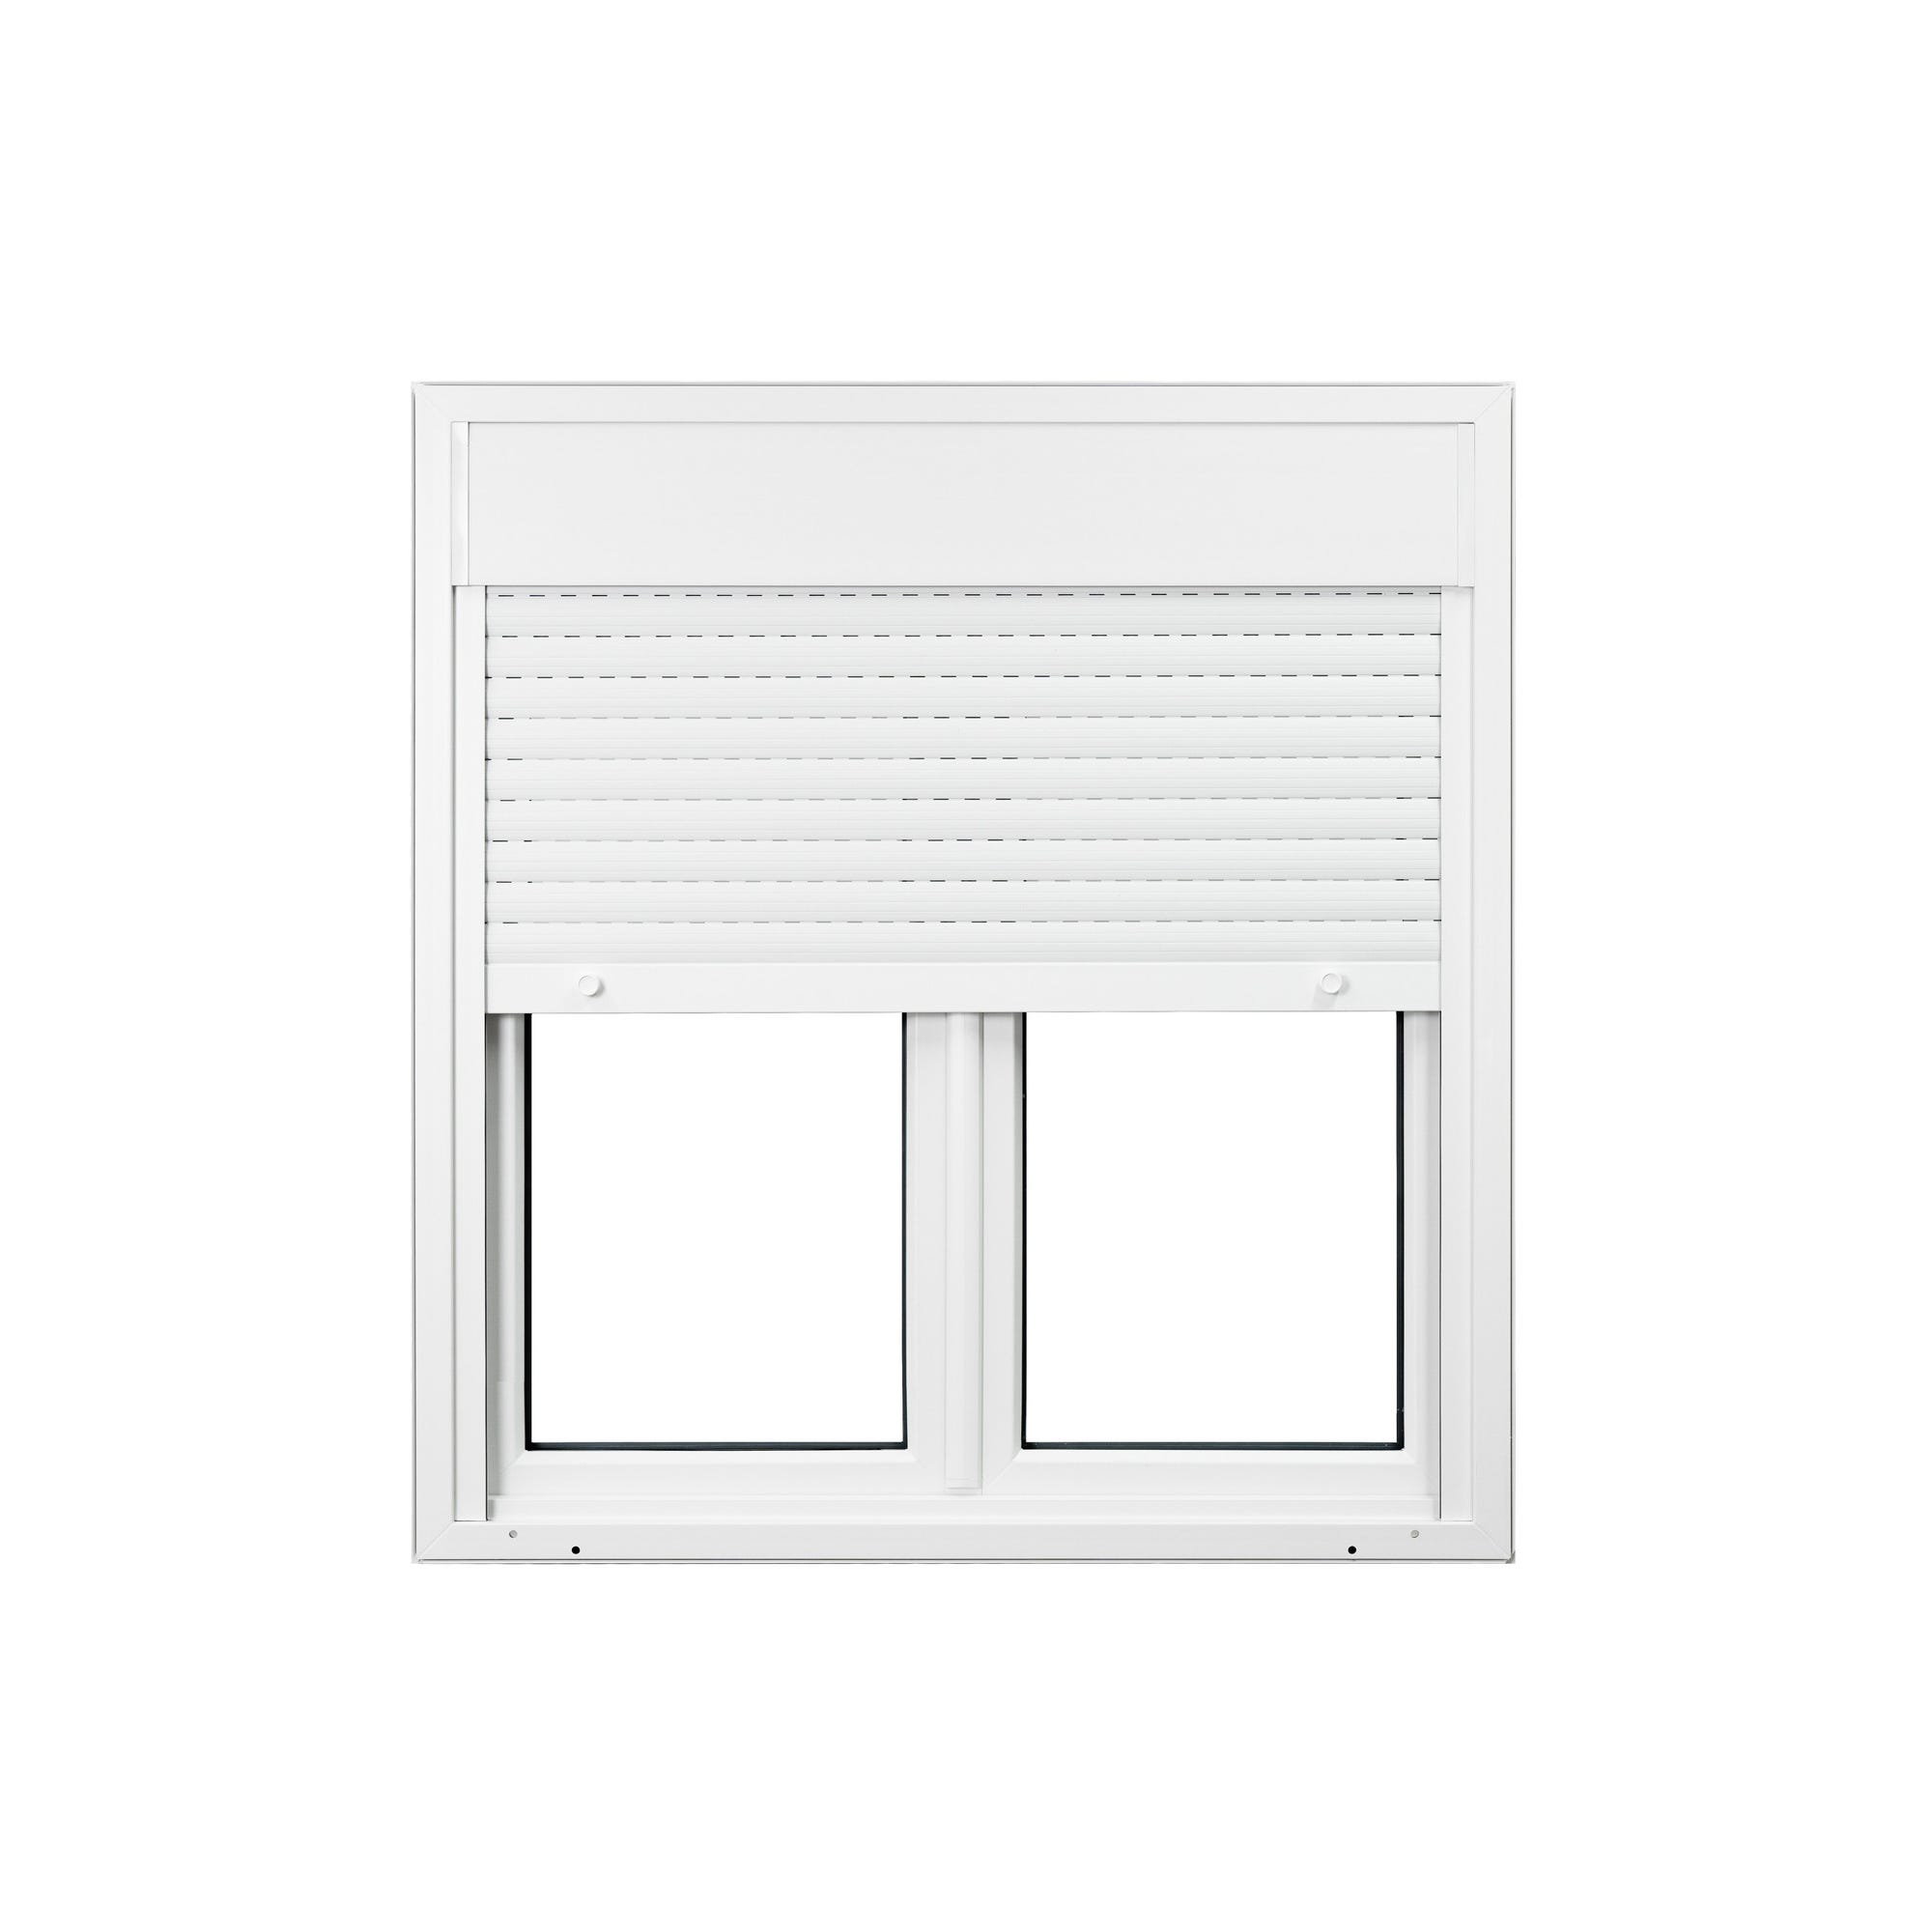 Fenêtre PVC 2 vantaux avec volet roulant intégré monobloc H.135 x l.120 cm - GROSFILLEX 2